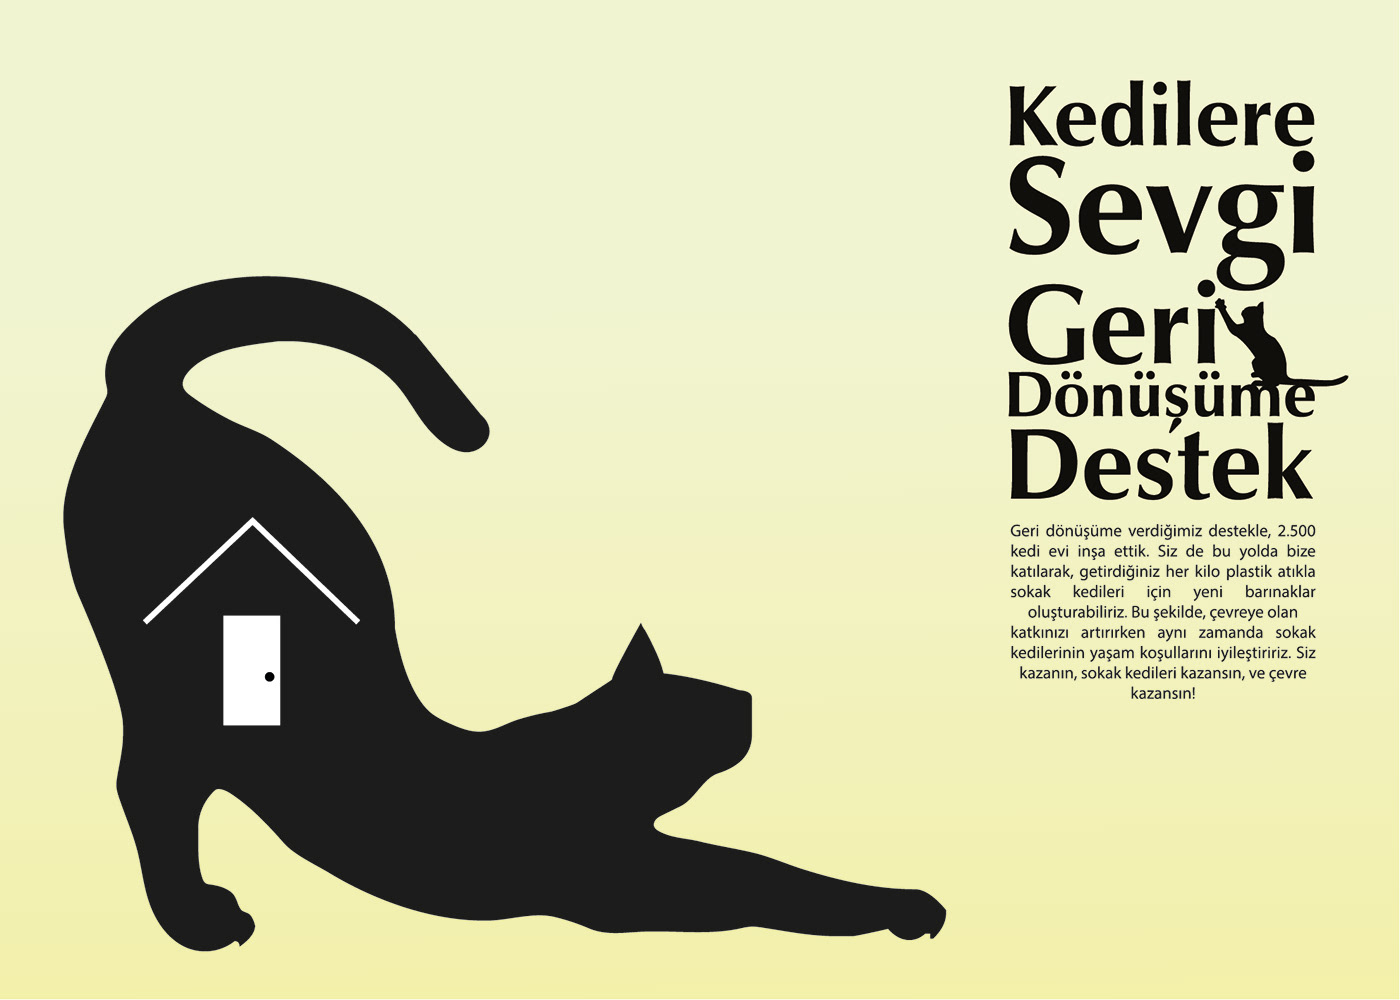 Cat ILLUSTRATION  adobe illustrator design brand identity Logo Design home poster branding  socialresponsibility